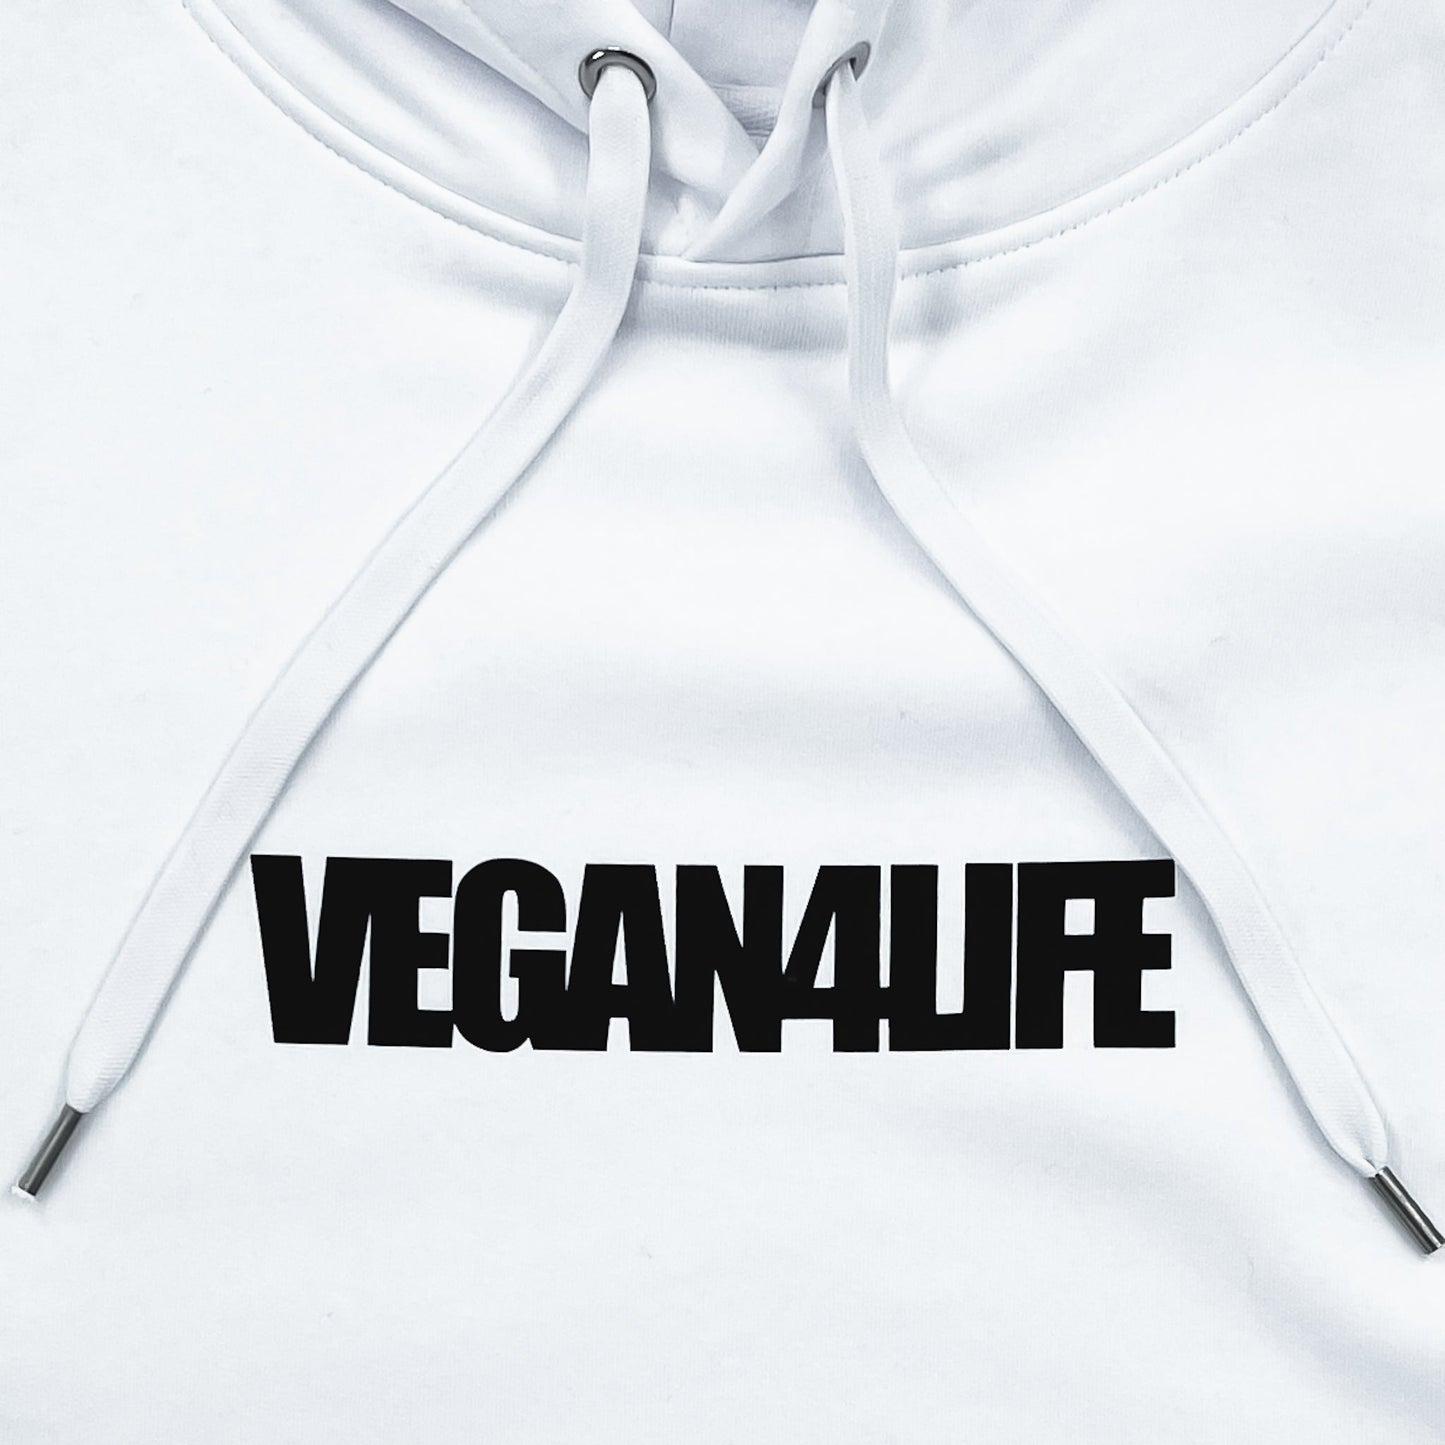 Hoodie Vegan4life SAMPLE SALE